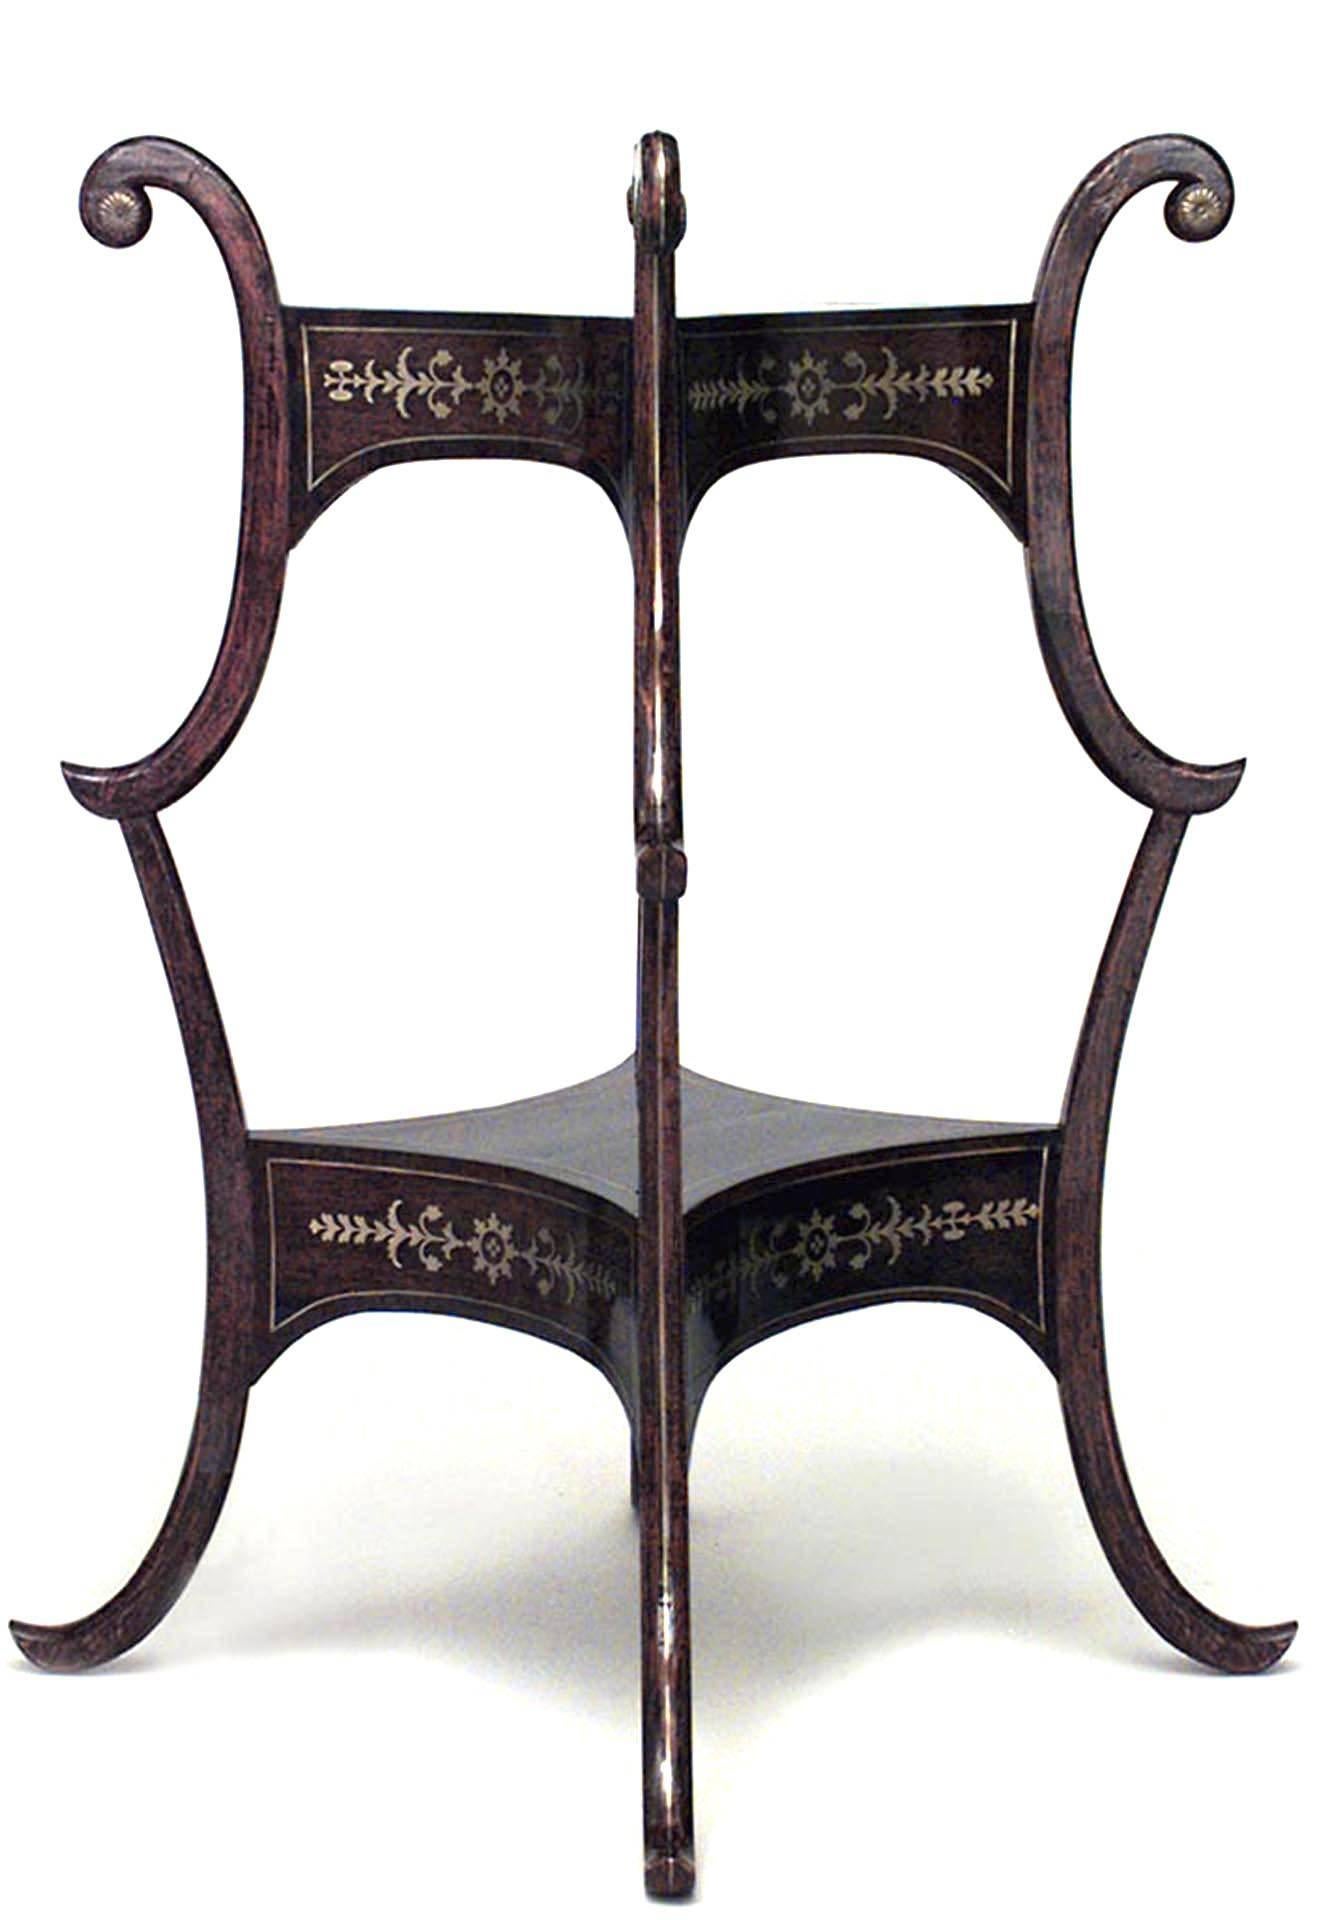 Englischer Beistelltisch im Regency-Stil (19. Jahrhundert) aus Palisander und Messing mit Intarsien, Beinen im Scroll-Design, quadratischer Platte und Ablage.
